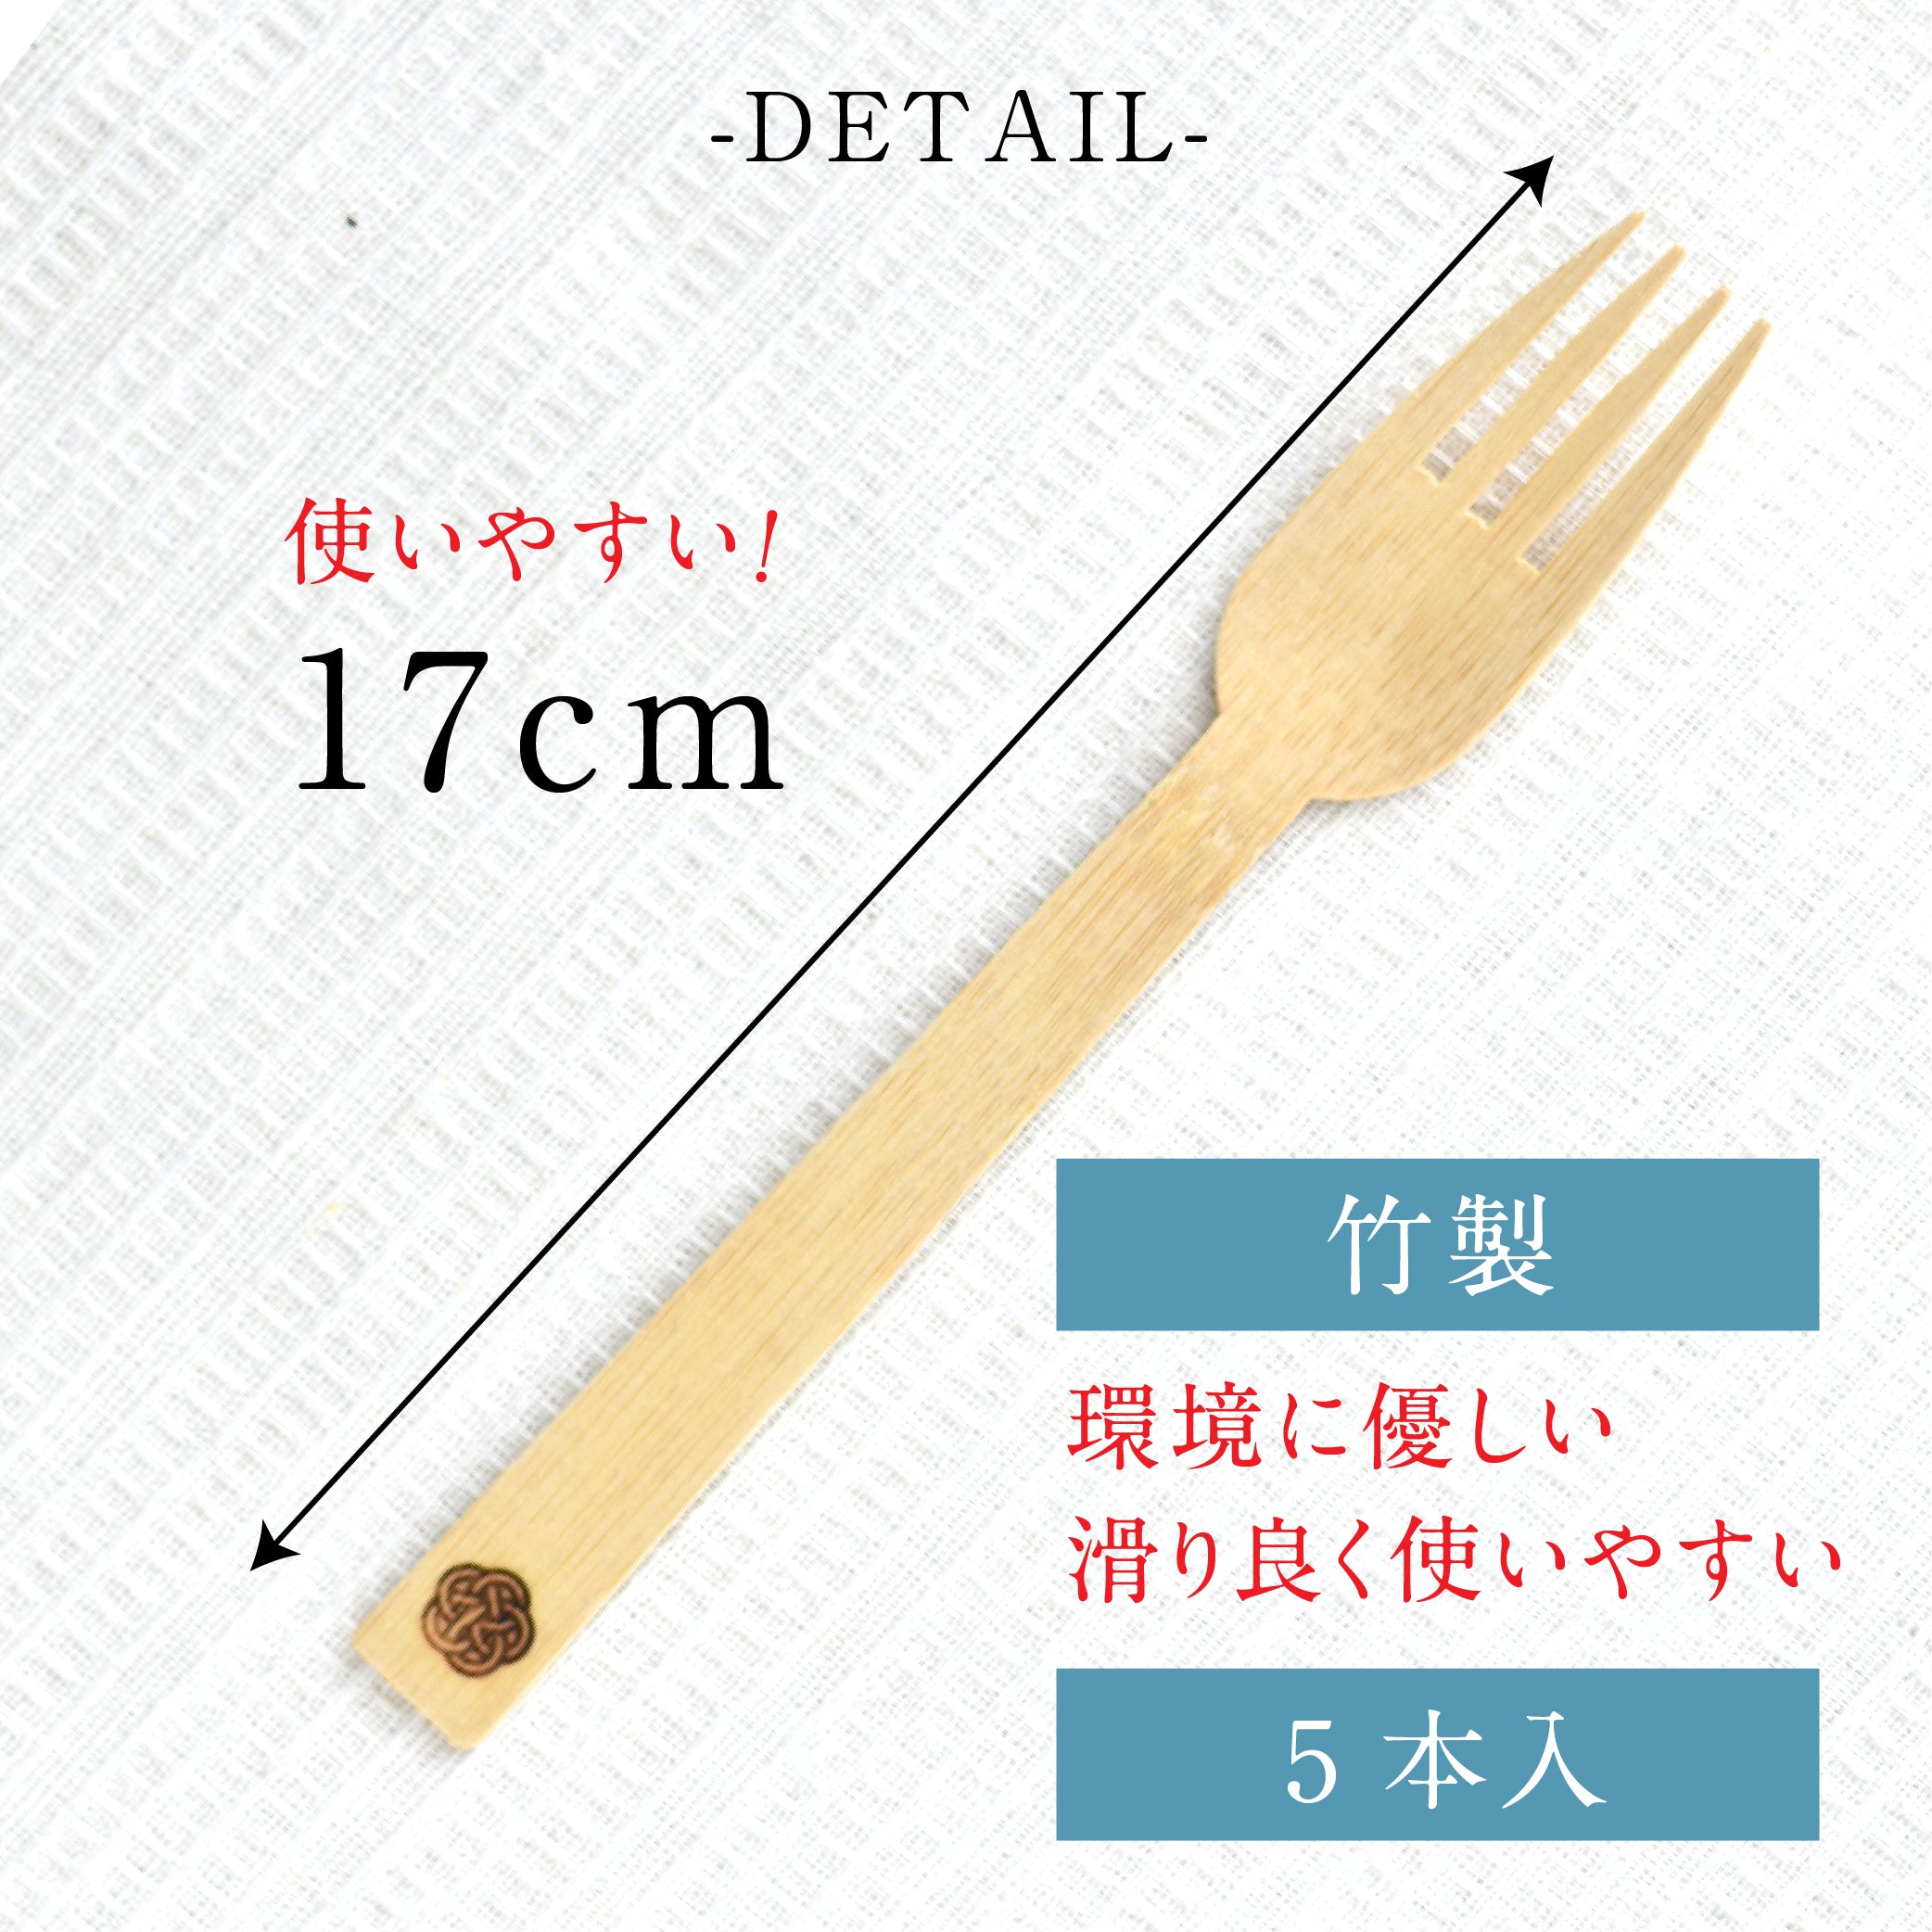 料理にマッチする紙皿「Za-ryu」ザリュー – agata kitchen studio